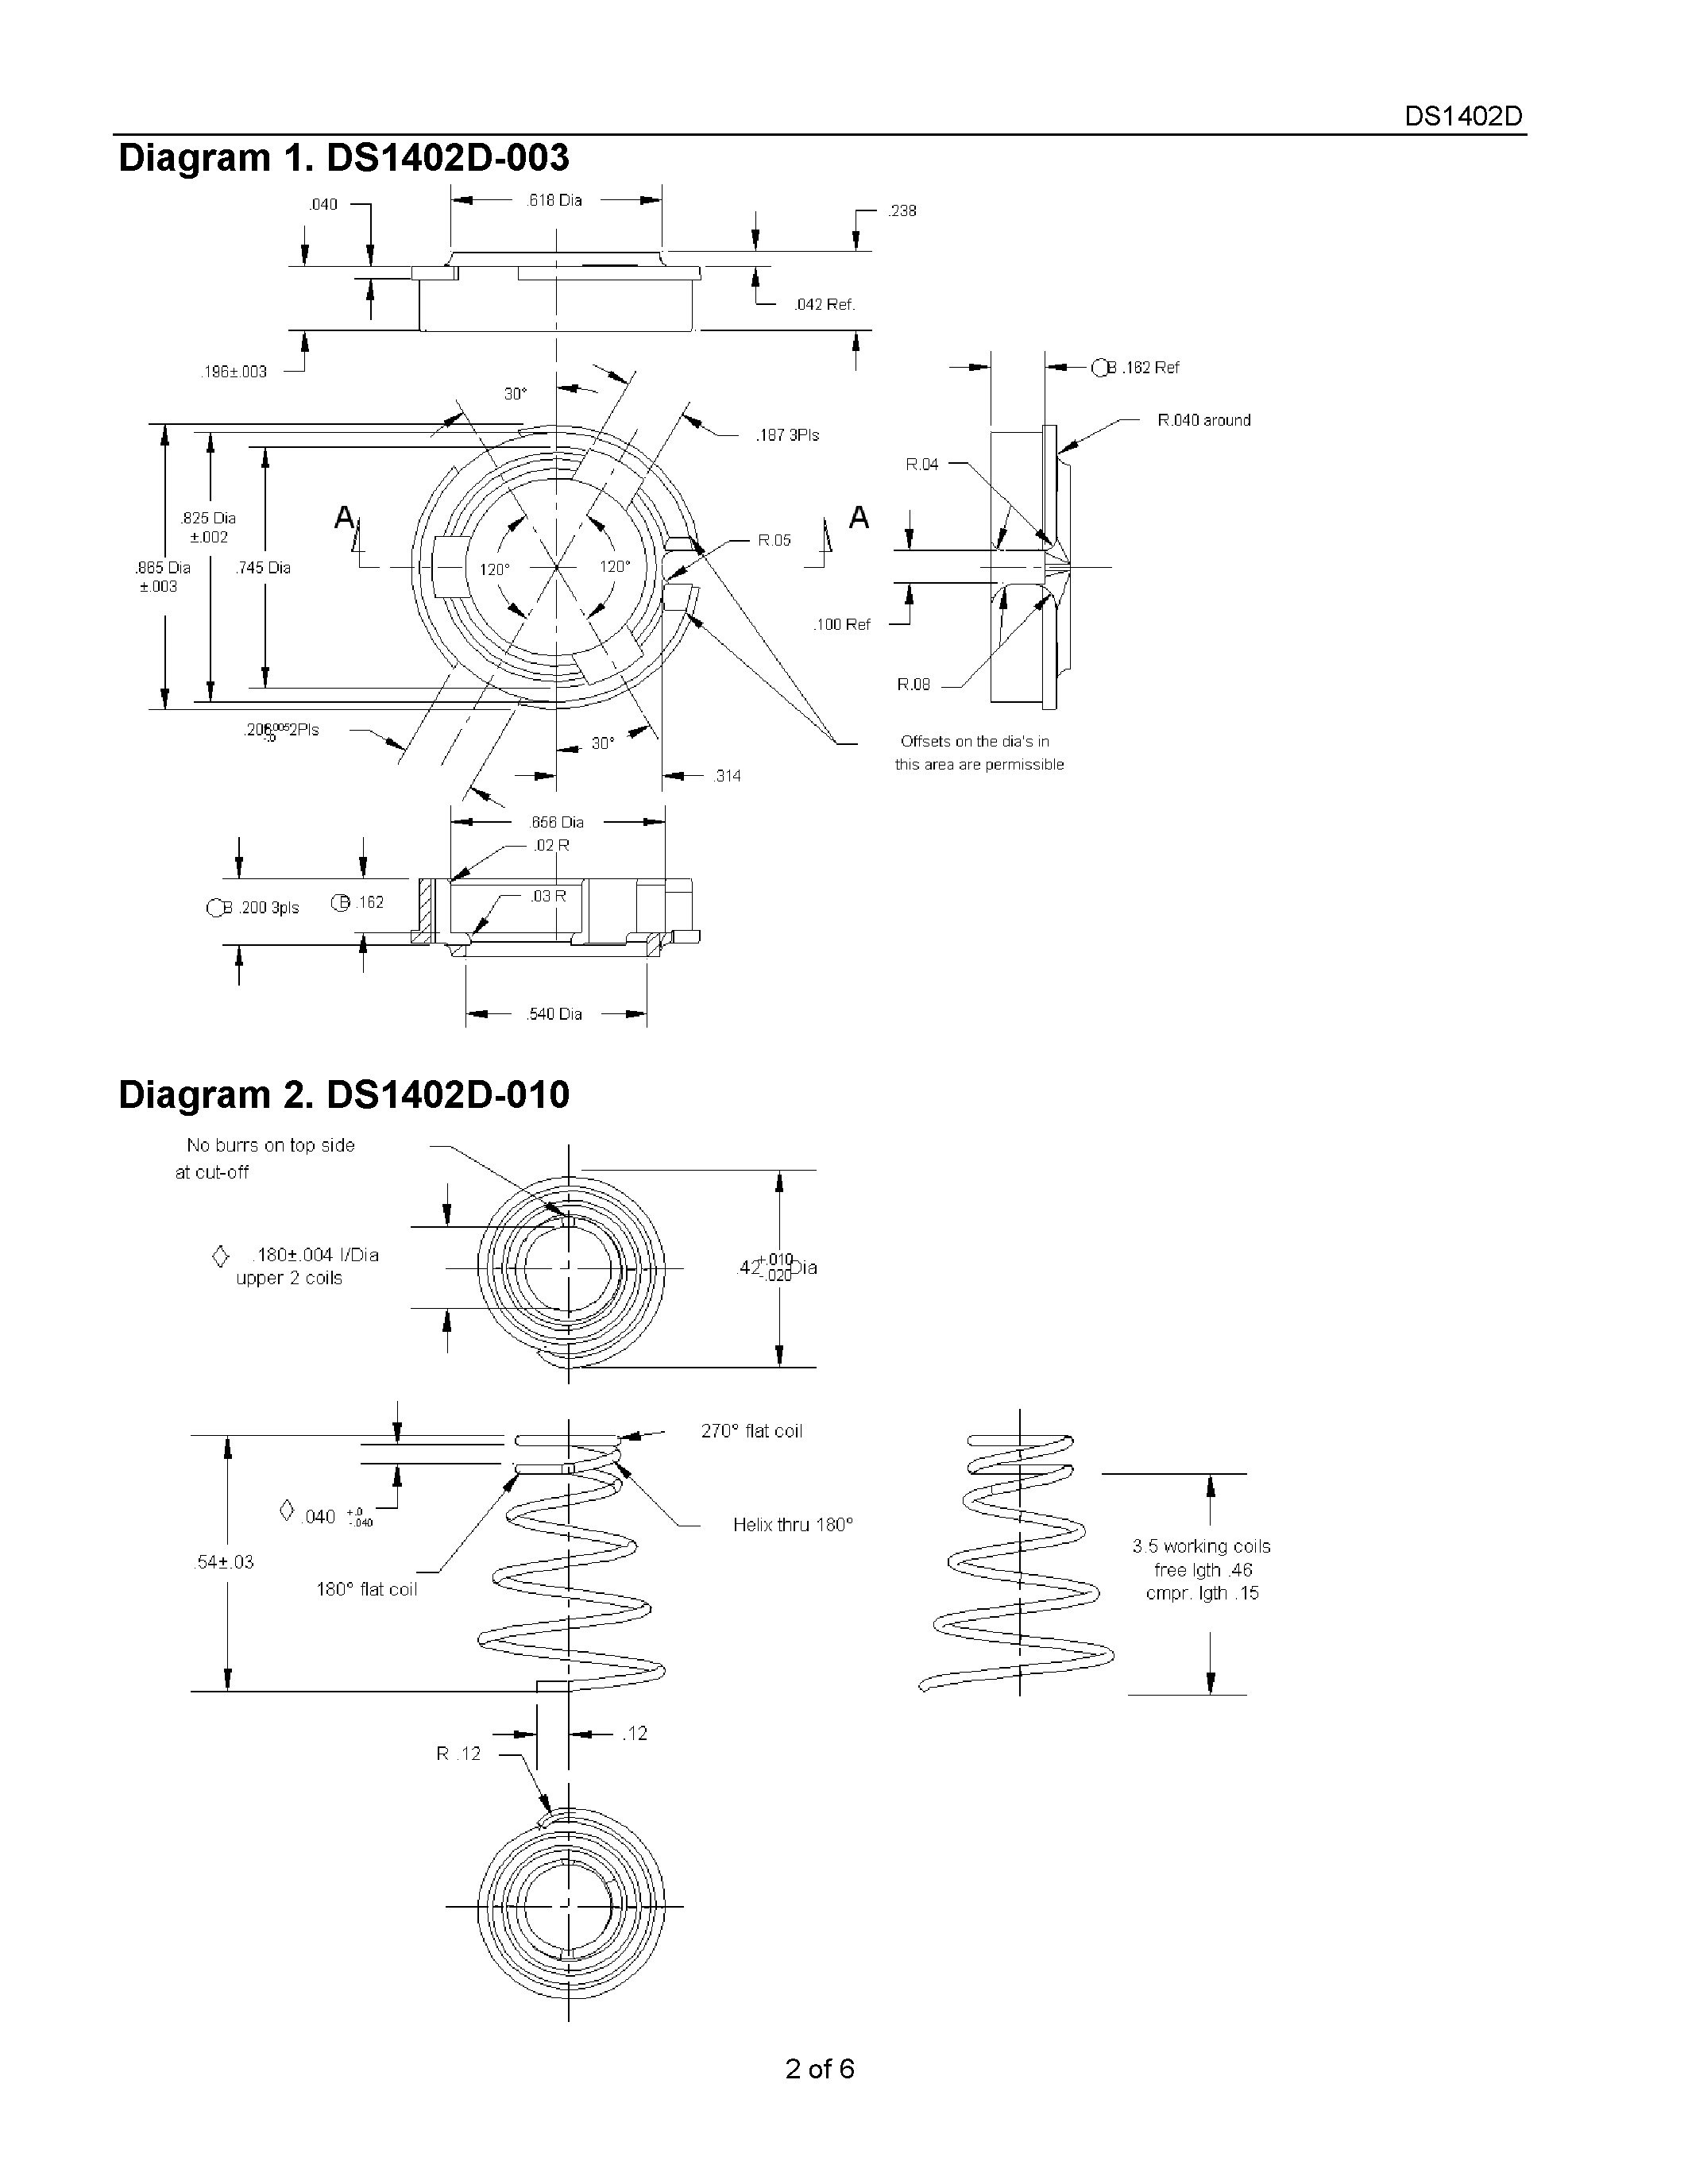 Даташит DS1402D-10 - iButton Probe Component Parts страница 2